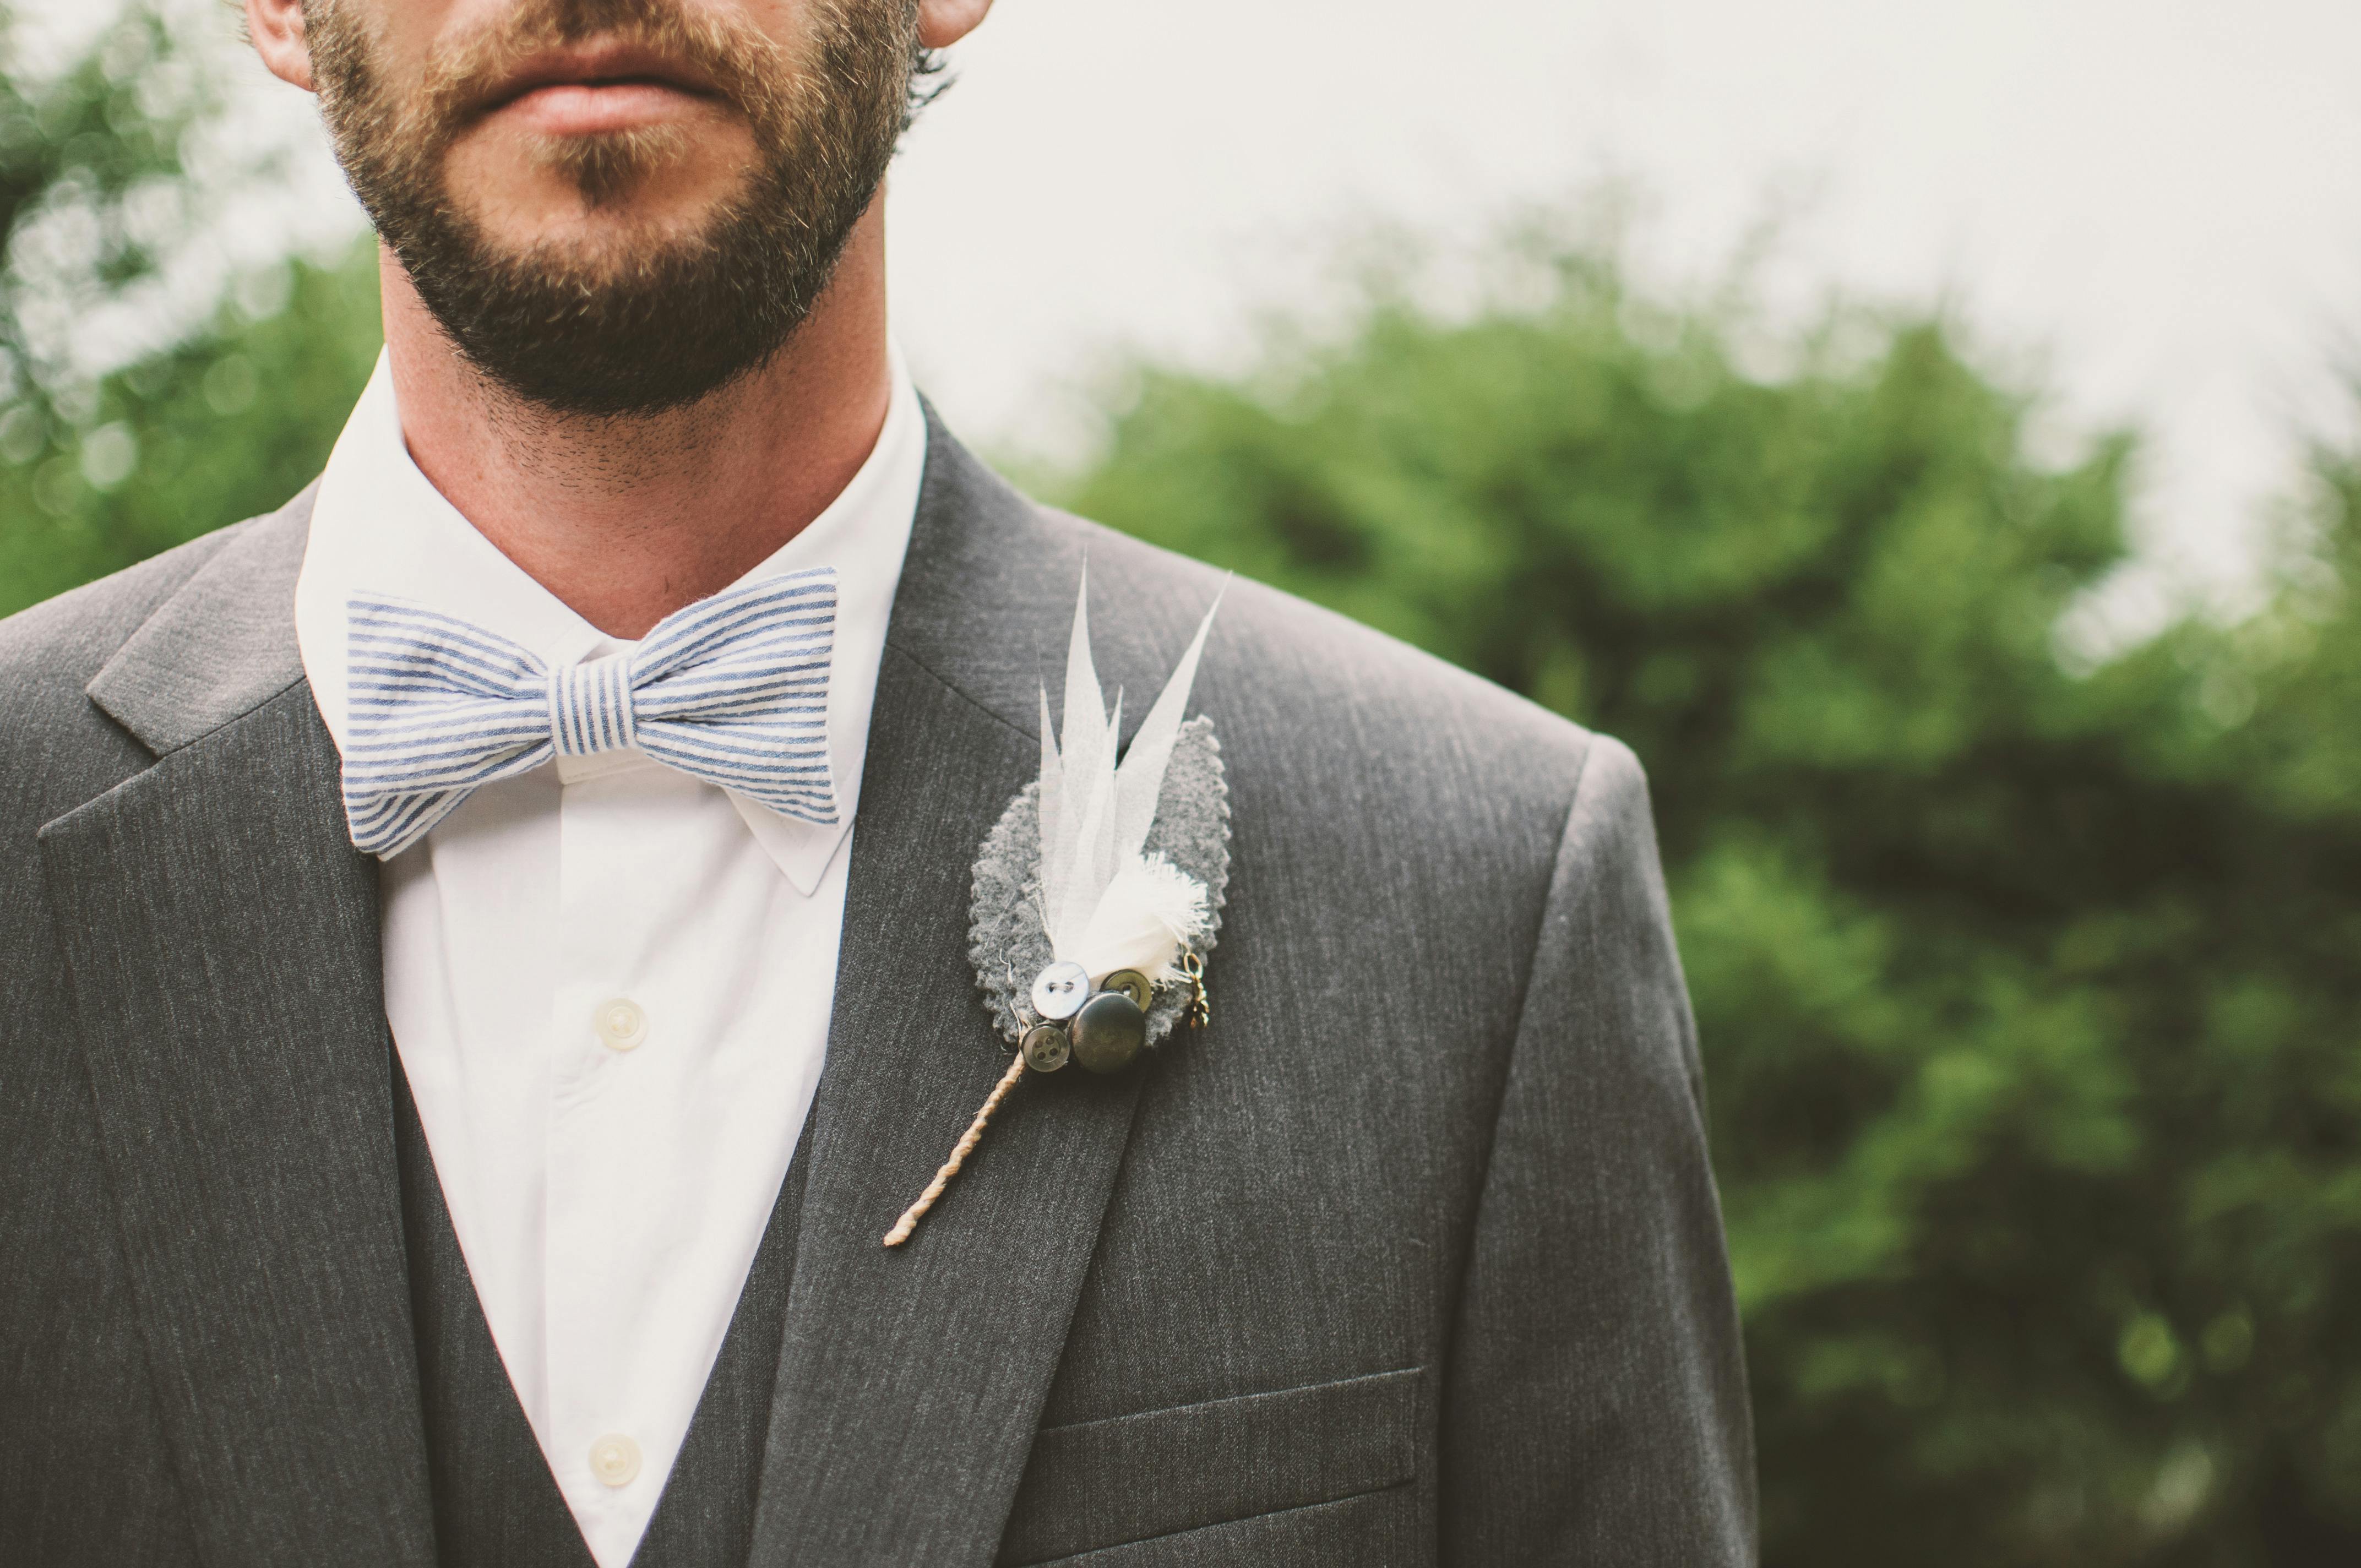 Der Bräutigam trägt einen grau-weißen Smoking | Quelle: Pexels